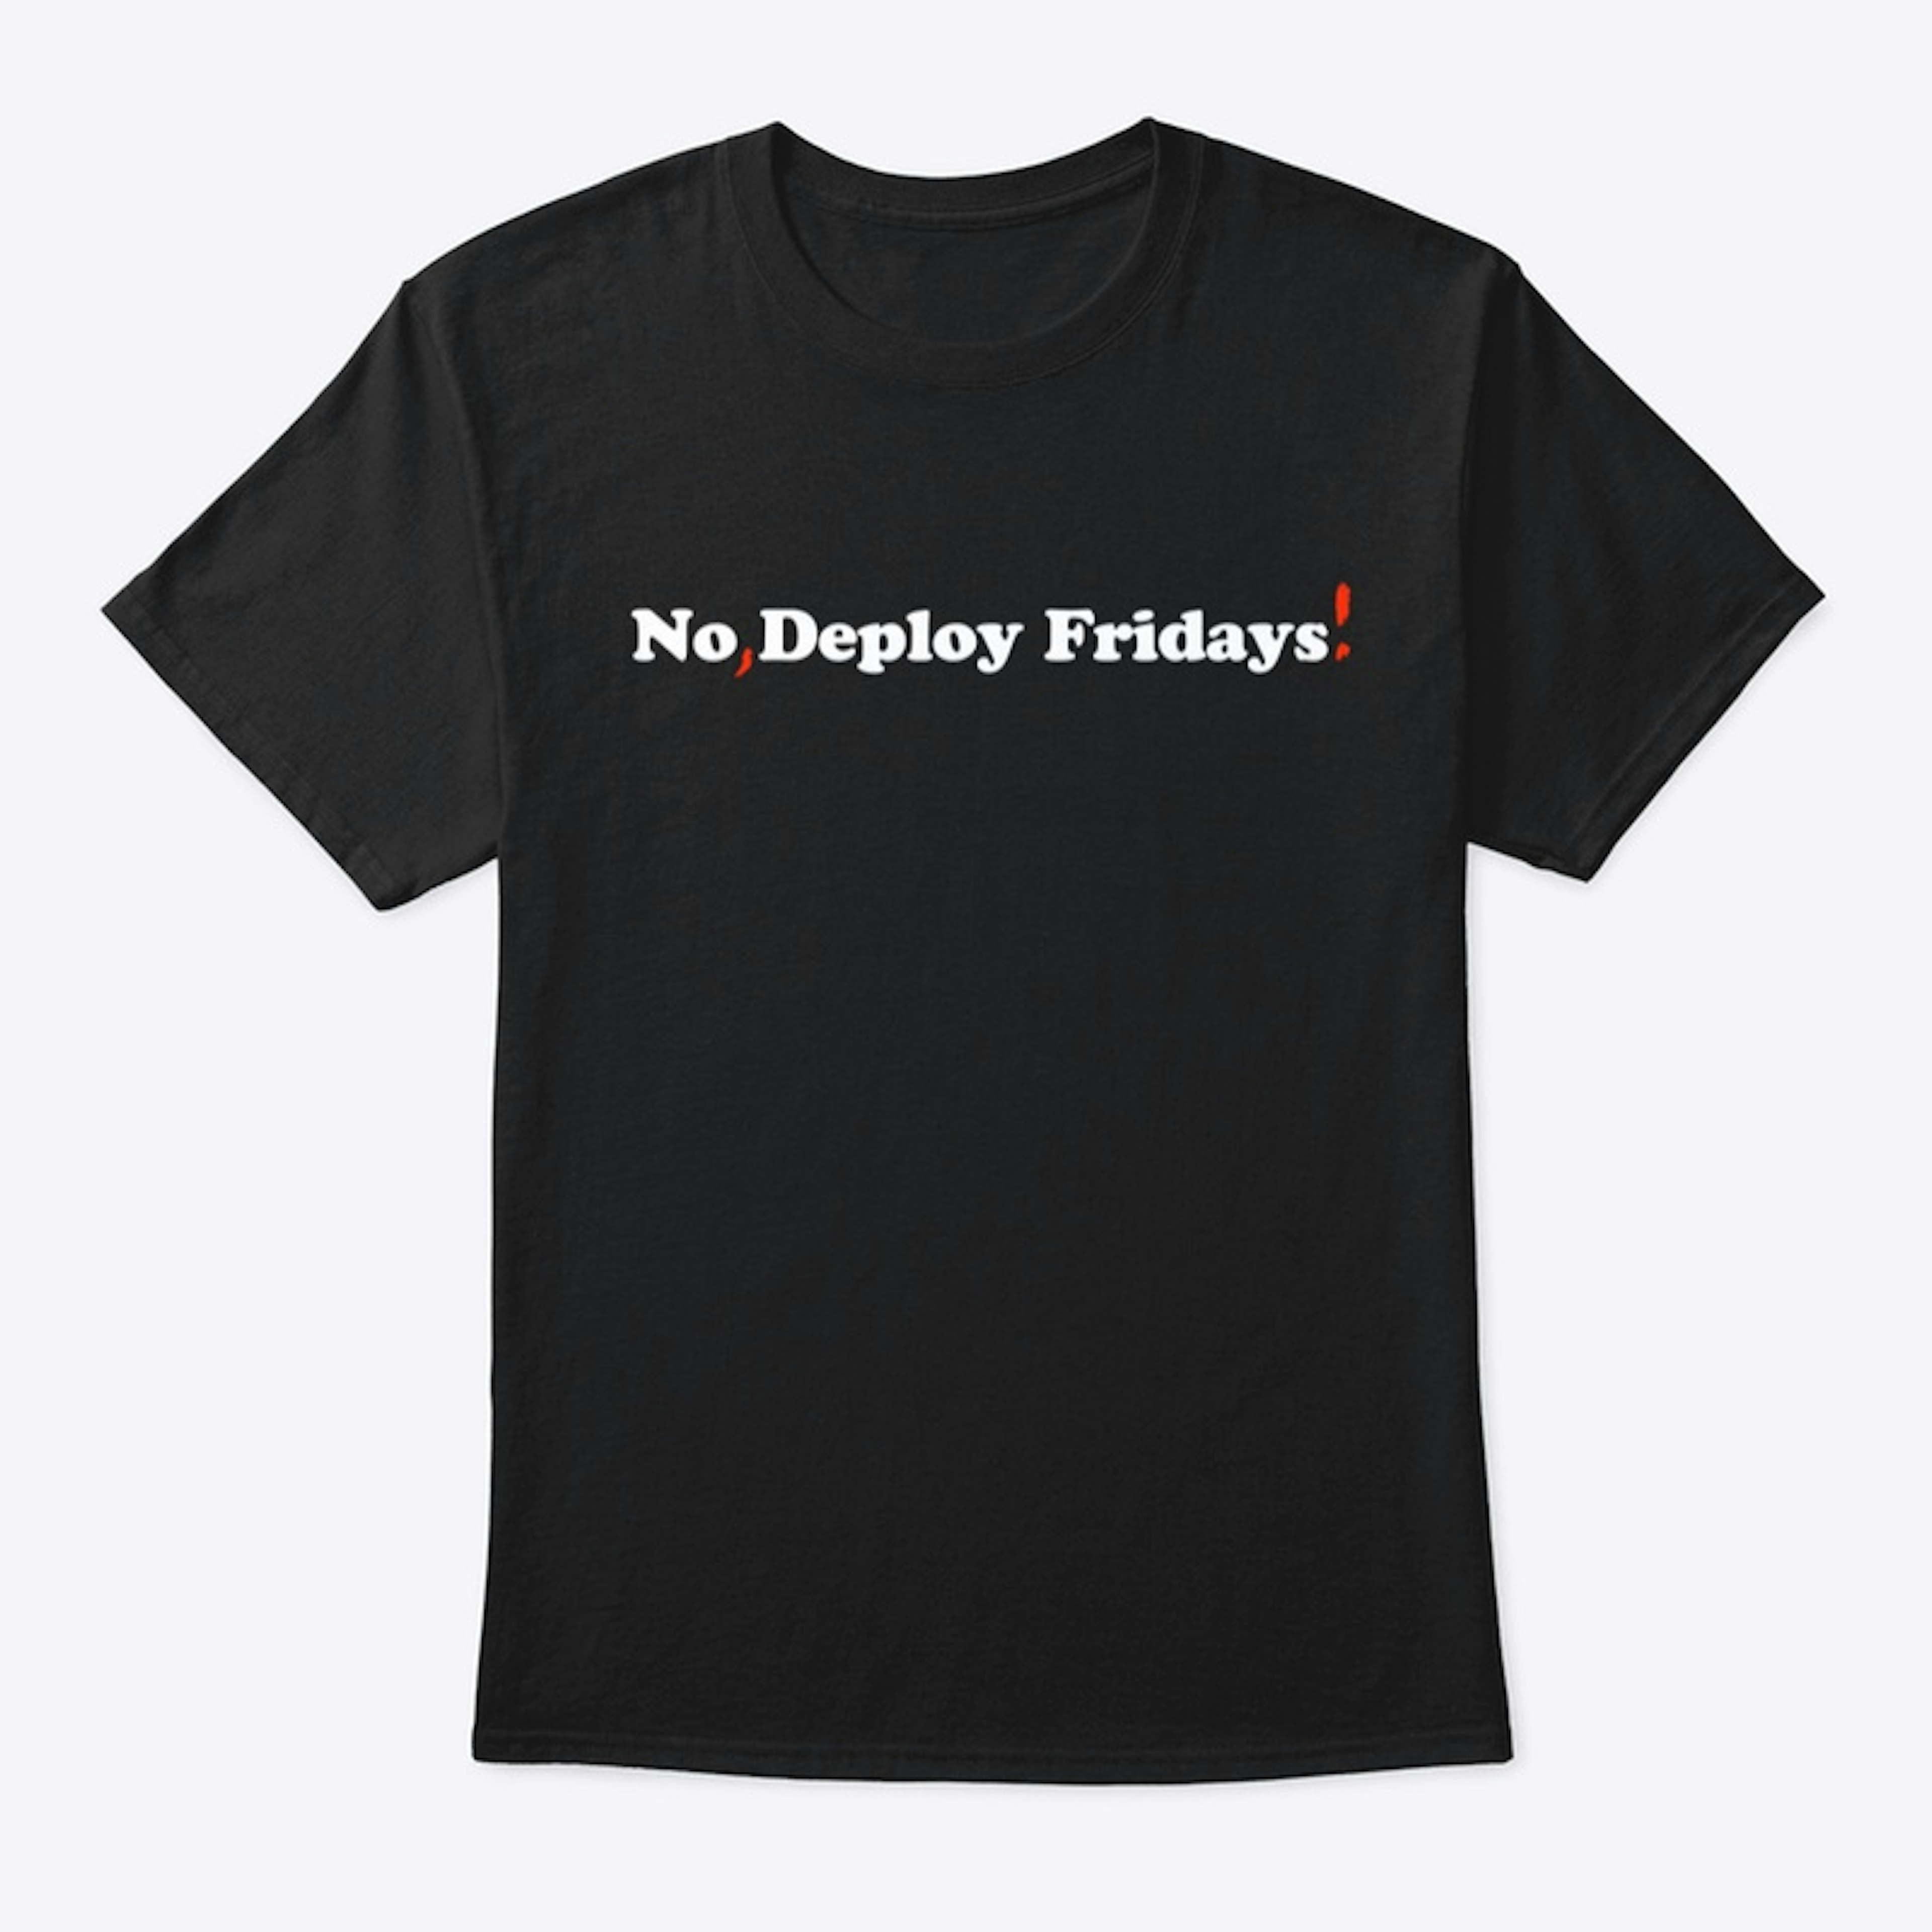 No, Deploy Fridays!